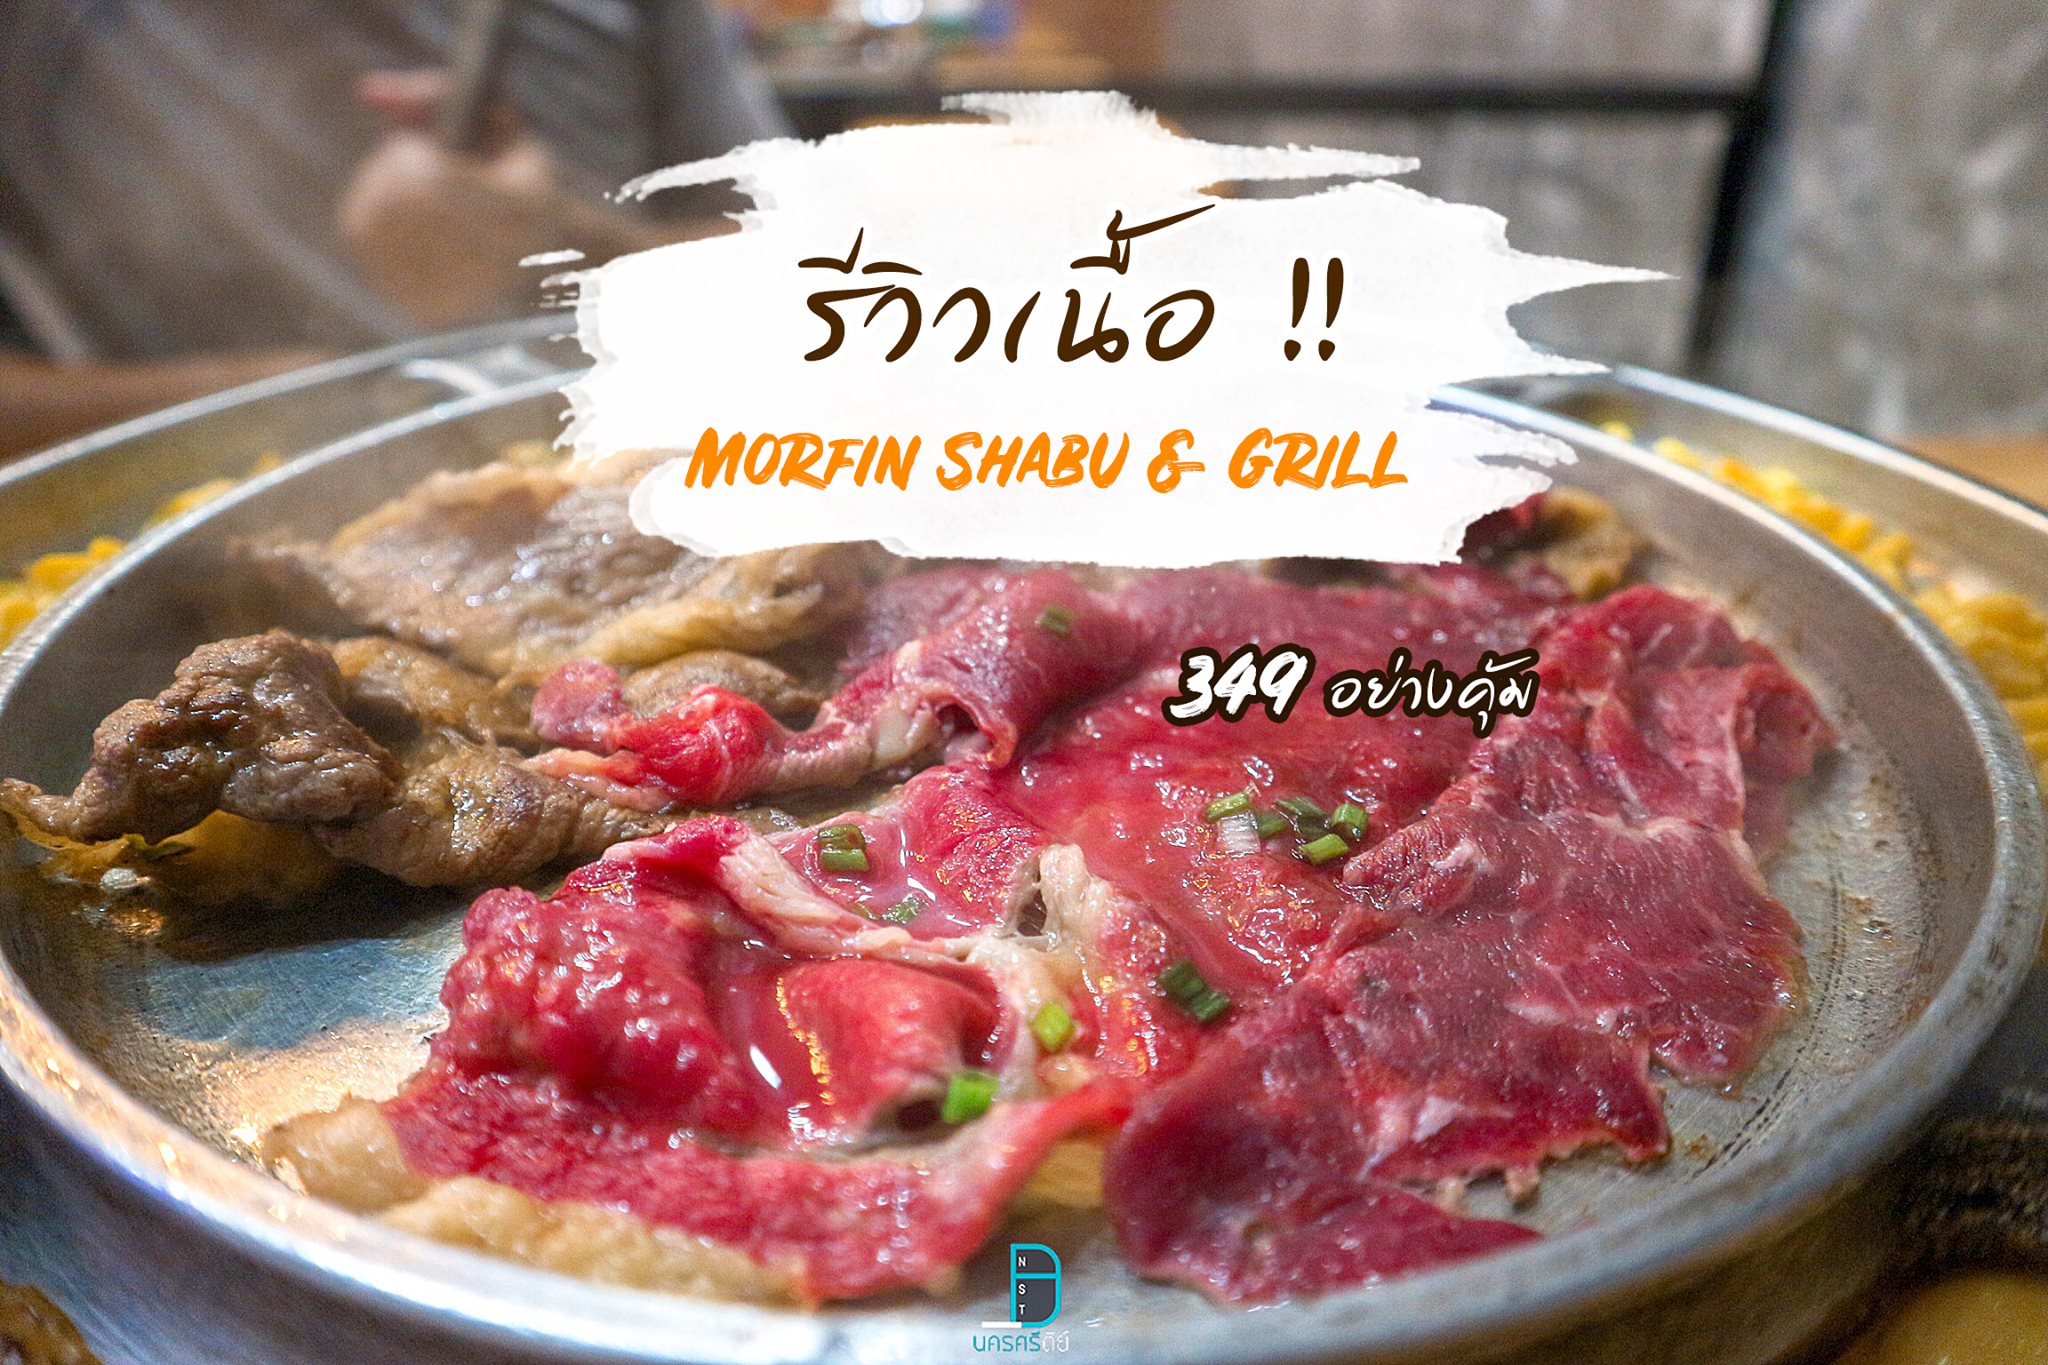 รีวิวเนื้อเด็ดๆนุ่มๆละลายในปาก บุฟเฟ่ต์เพียง 349 เท่านั้น at Morfin Shabu  Grill